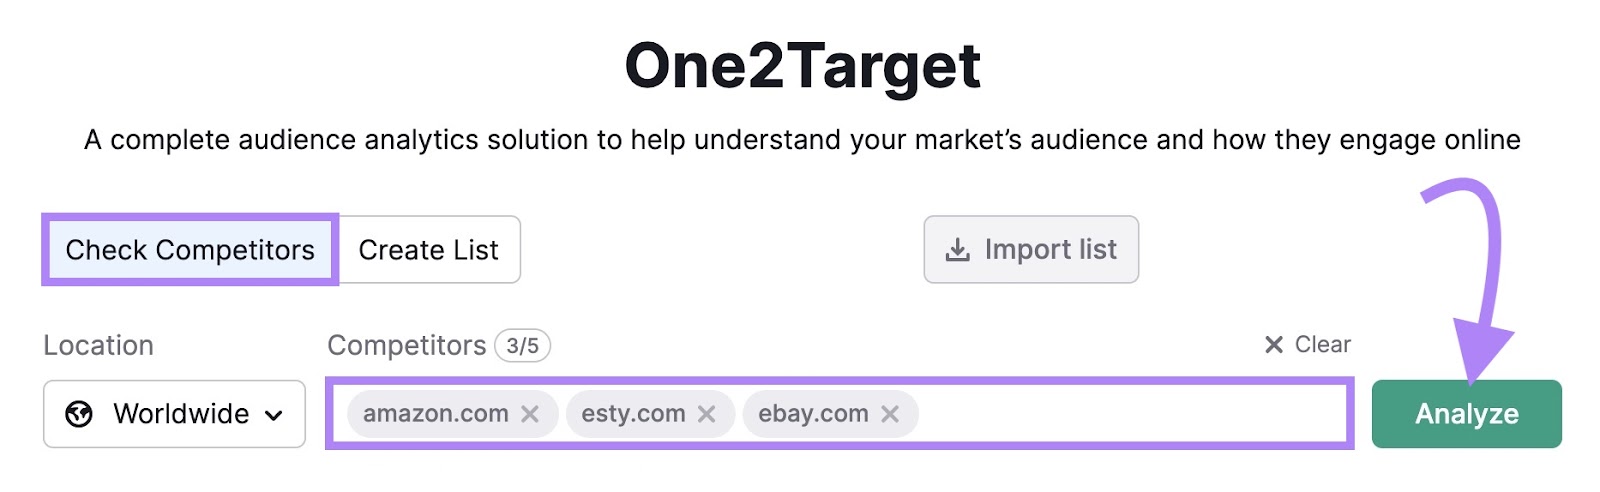 "amazon.com" "etsy.com" "ebay.com" entered into the One2Target tool